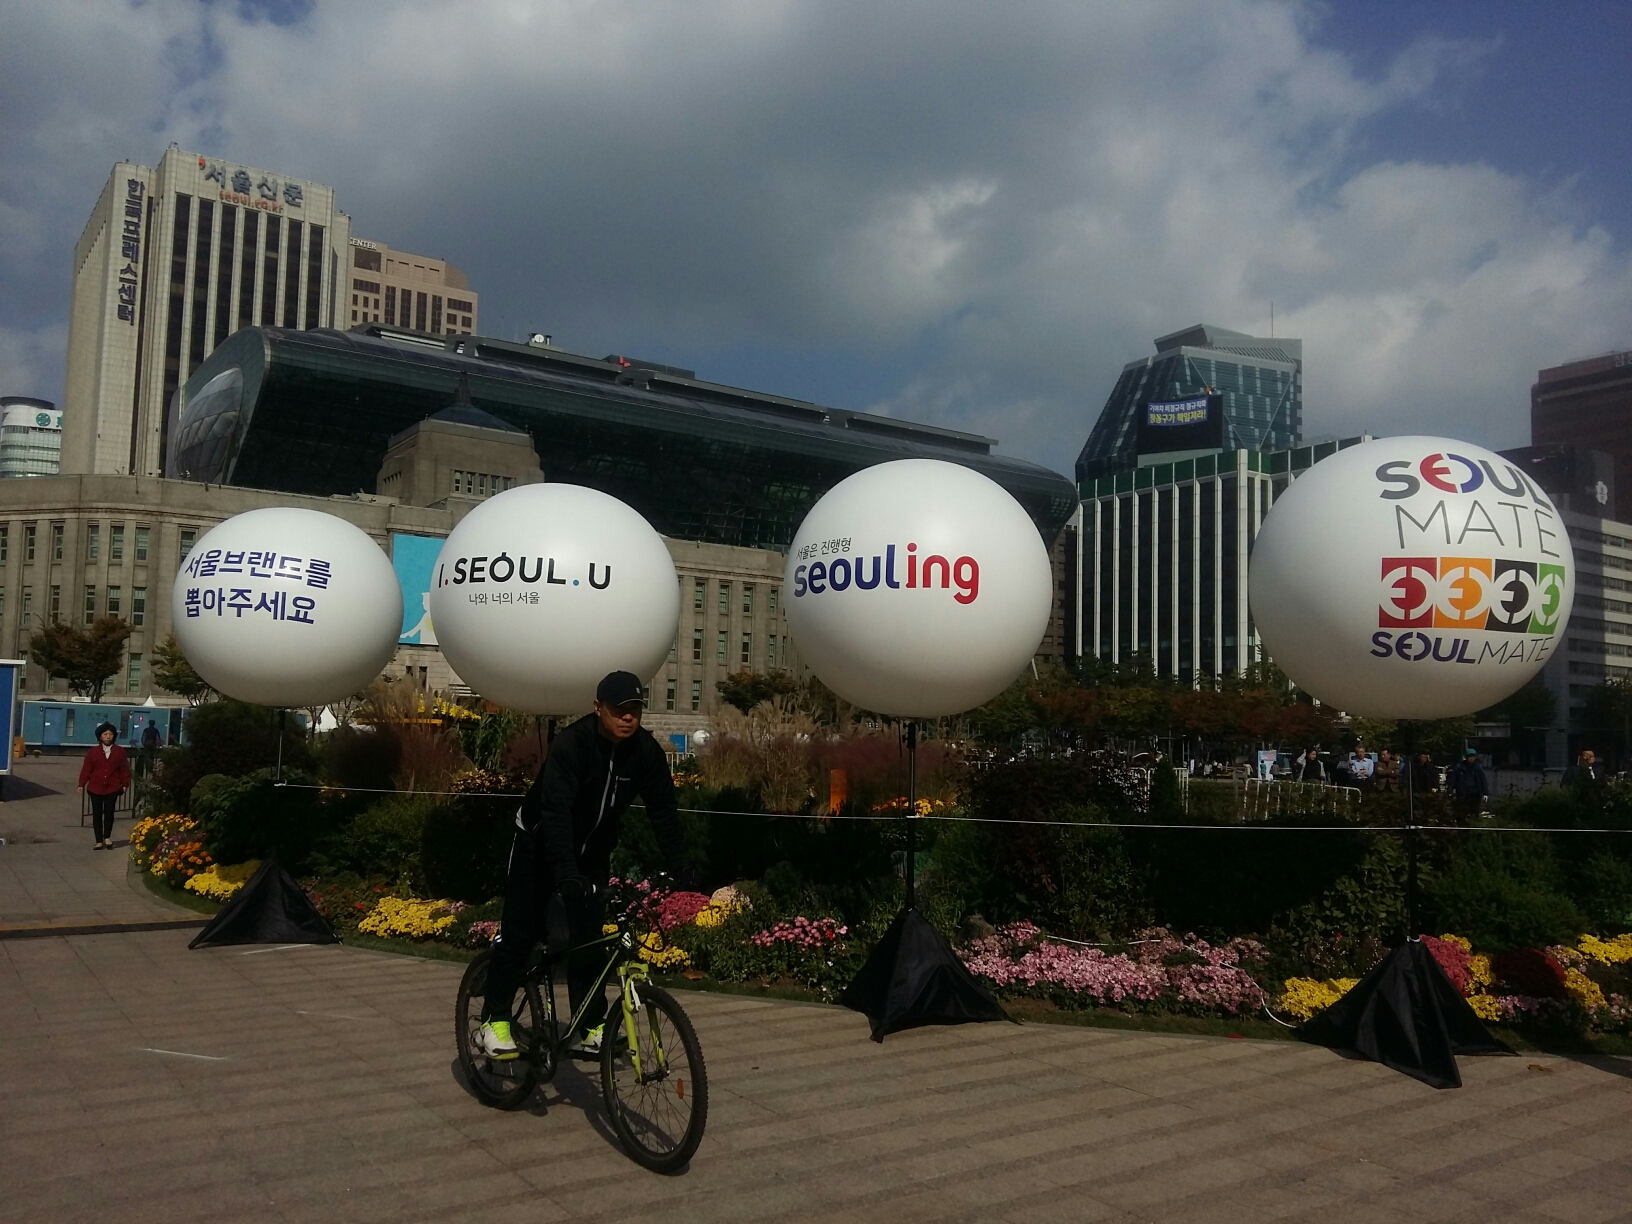 27일 오후 서울시청앞 광장에 새로운 서울브랜드를 뽑아달라는 홍보물이 세워져있다.